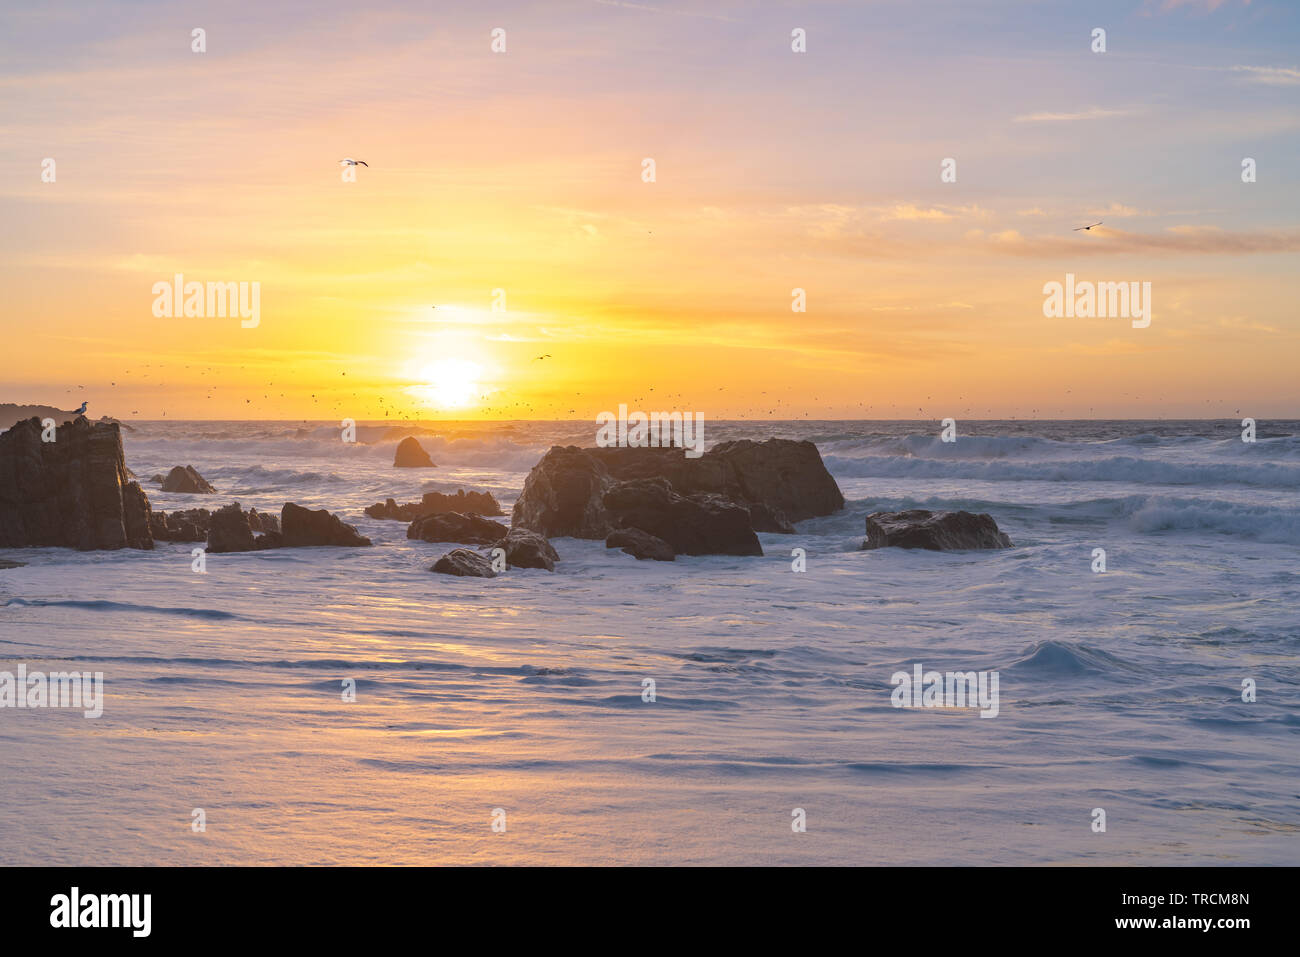 Sonnenuntergang an einem Sandstrand Big Sur, Kalifornien Strand mit großen Wellen wie Vögel fliegen Overhead. Stockfoto